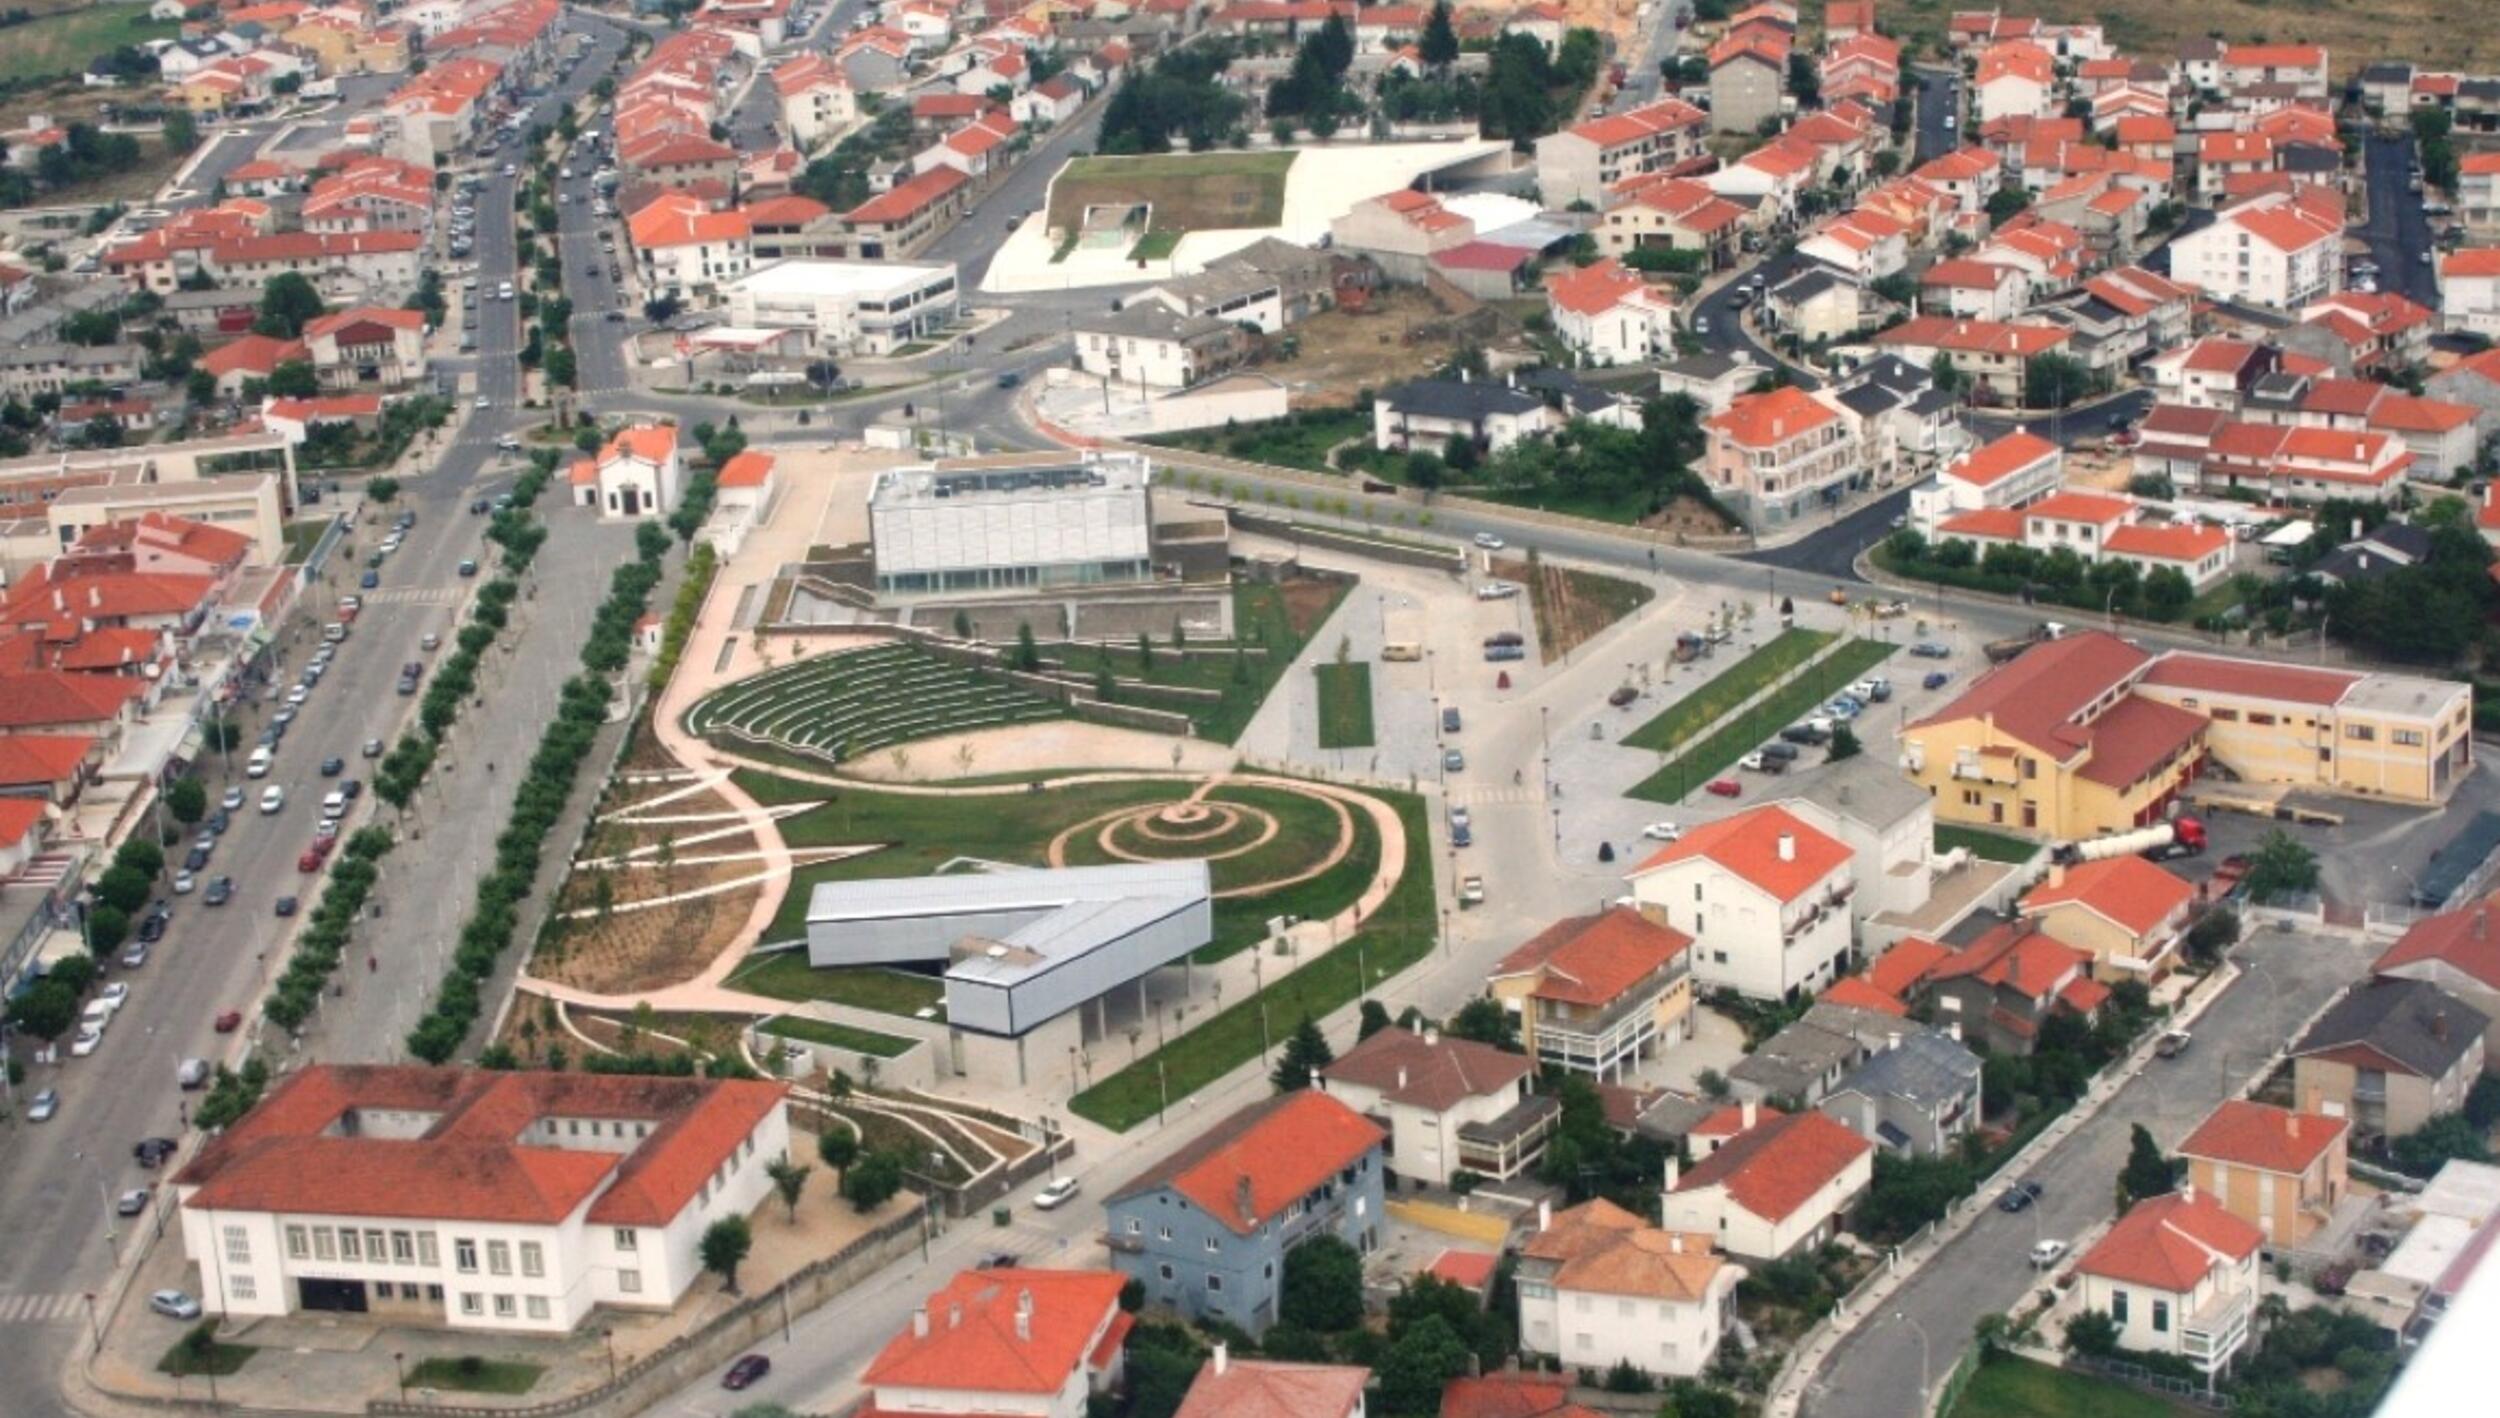 Vista aérea do centro de Mogadouro